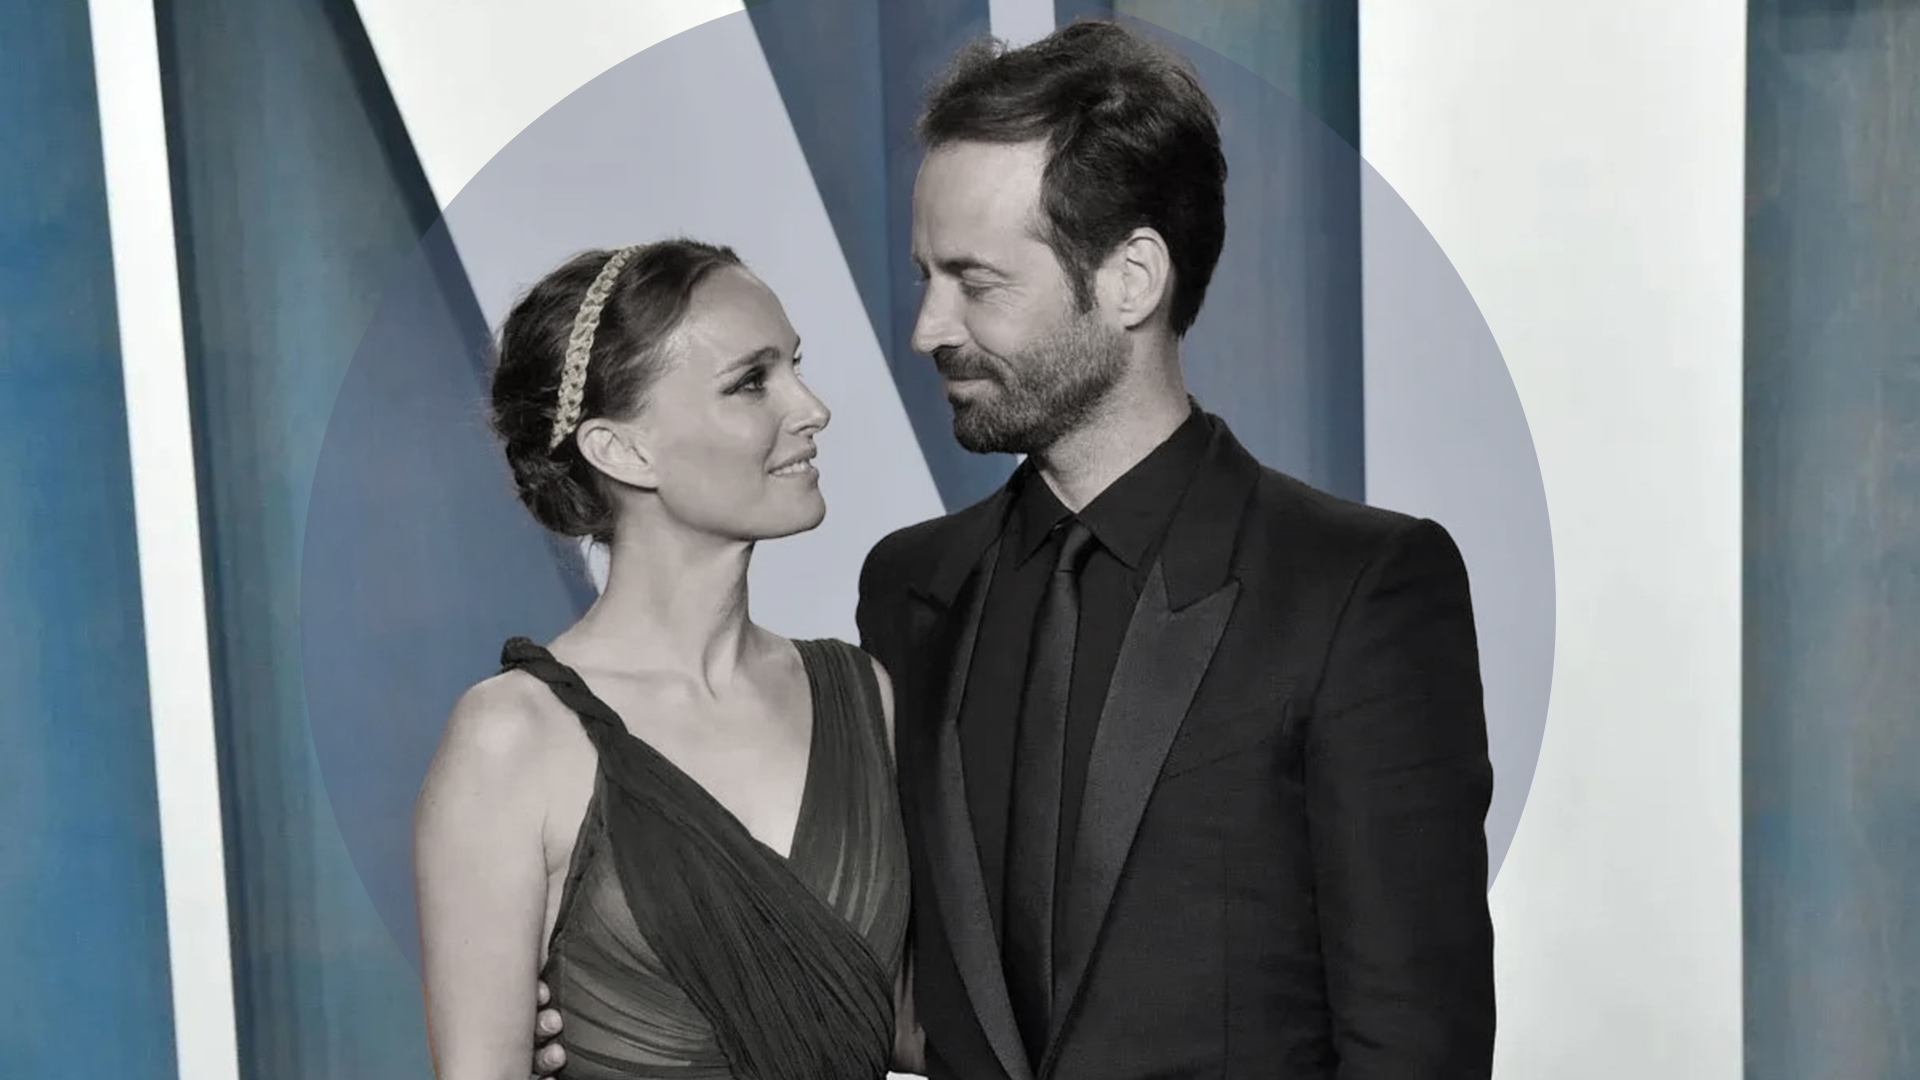 Natalie Portman หย่าร้างสามีชาวฝรั่งเศส Benjamin Millepied หลังแยกทางเงียบ ๆ เซ่นปมพิษนอกใจ